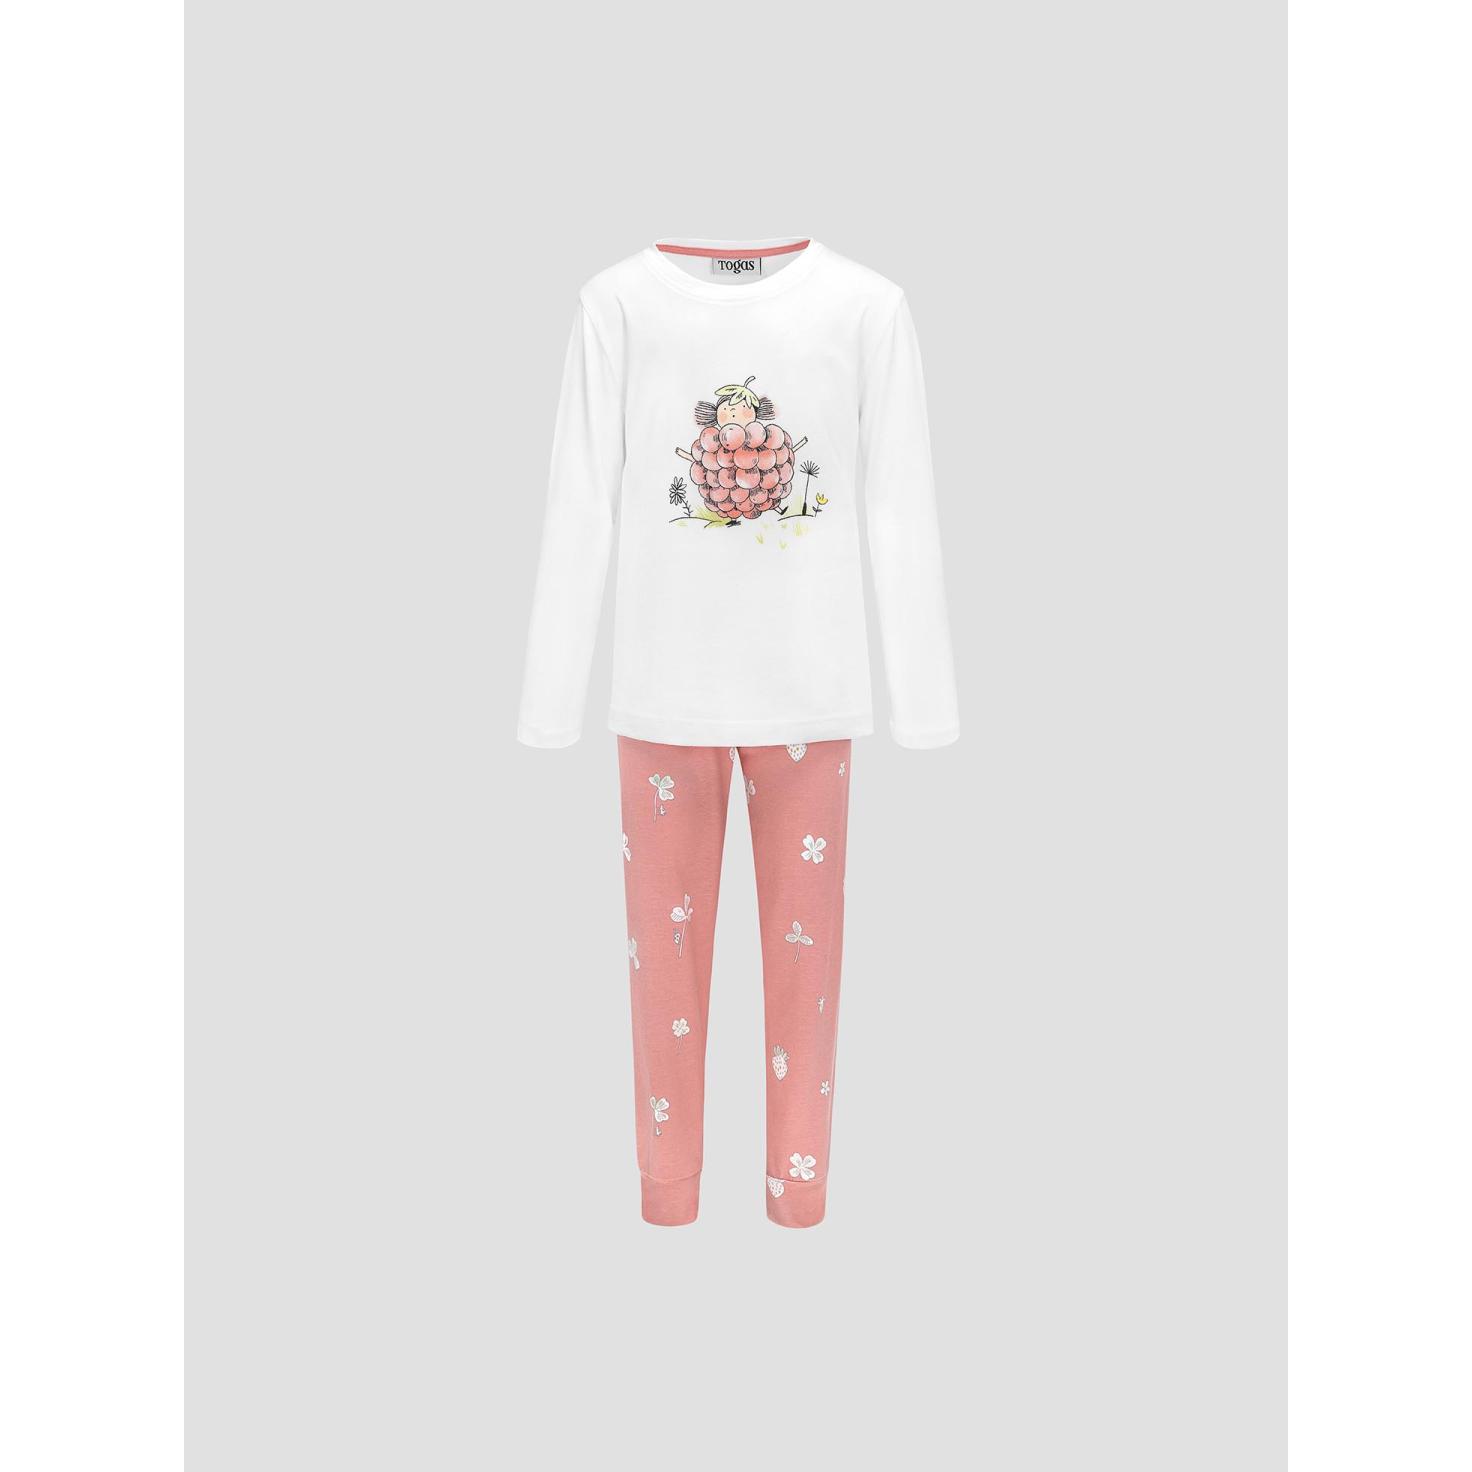 Пижама для девочек Kids by togas Стробби бело-розовый 128-134 см пижама для девочек kids by togas стробби бело розовый 104 110 см